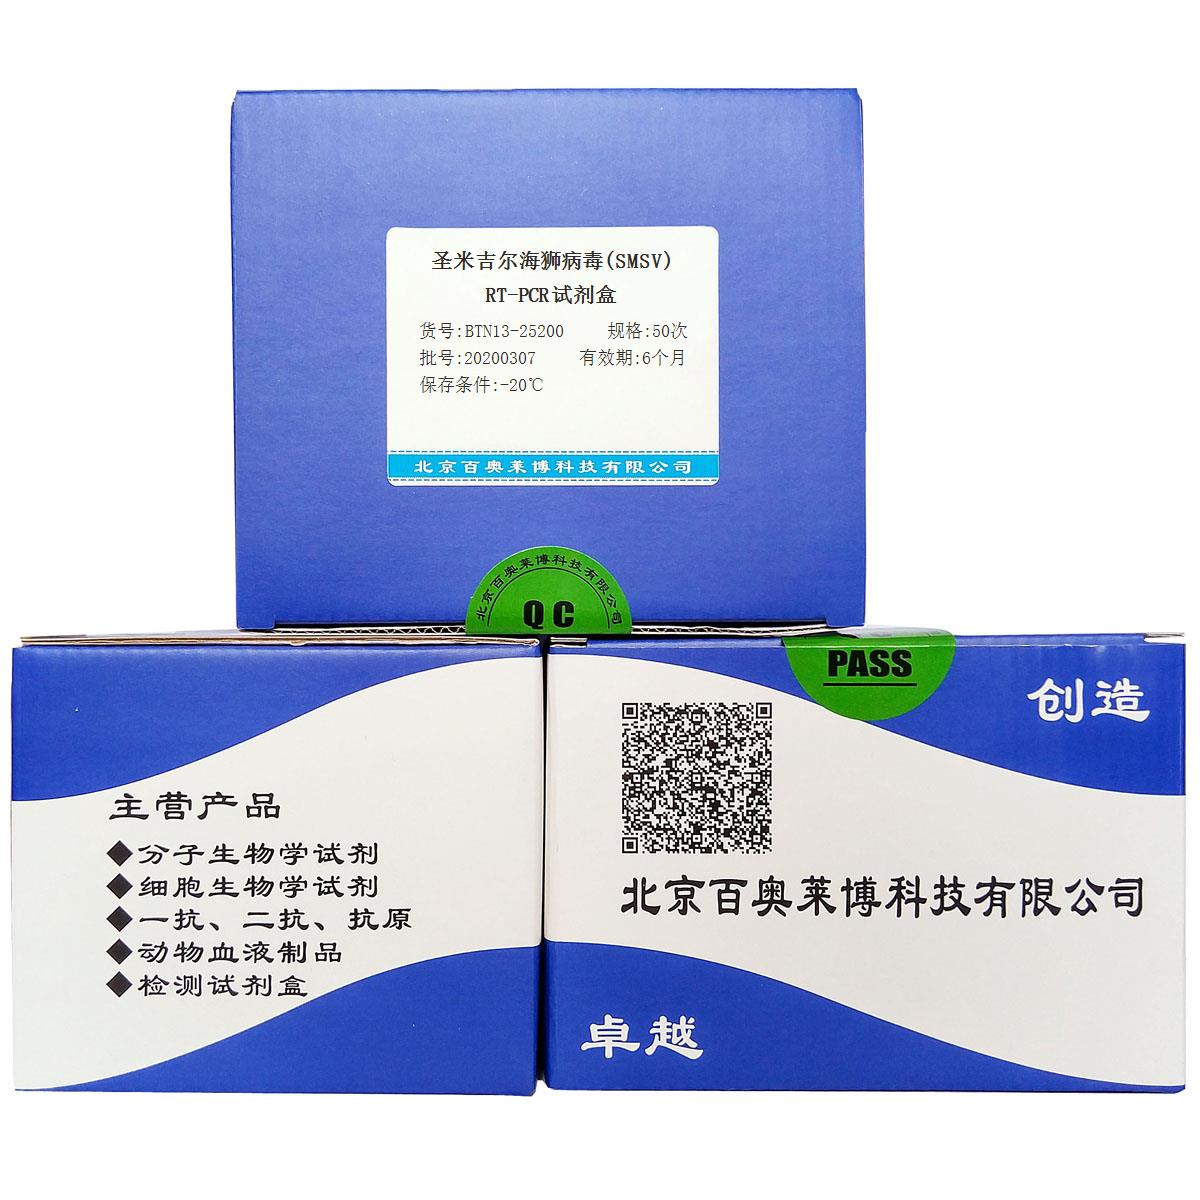 圣米吉尔海狮病毒(SMSV)RT-PCR试剂盒